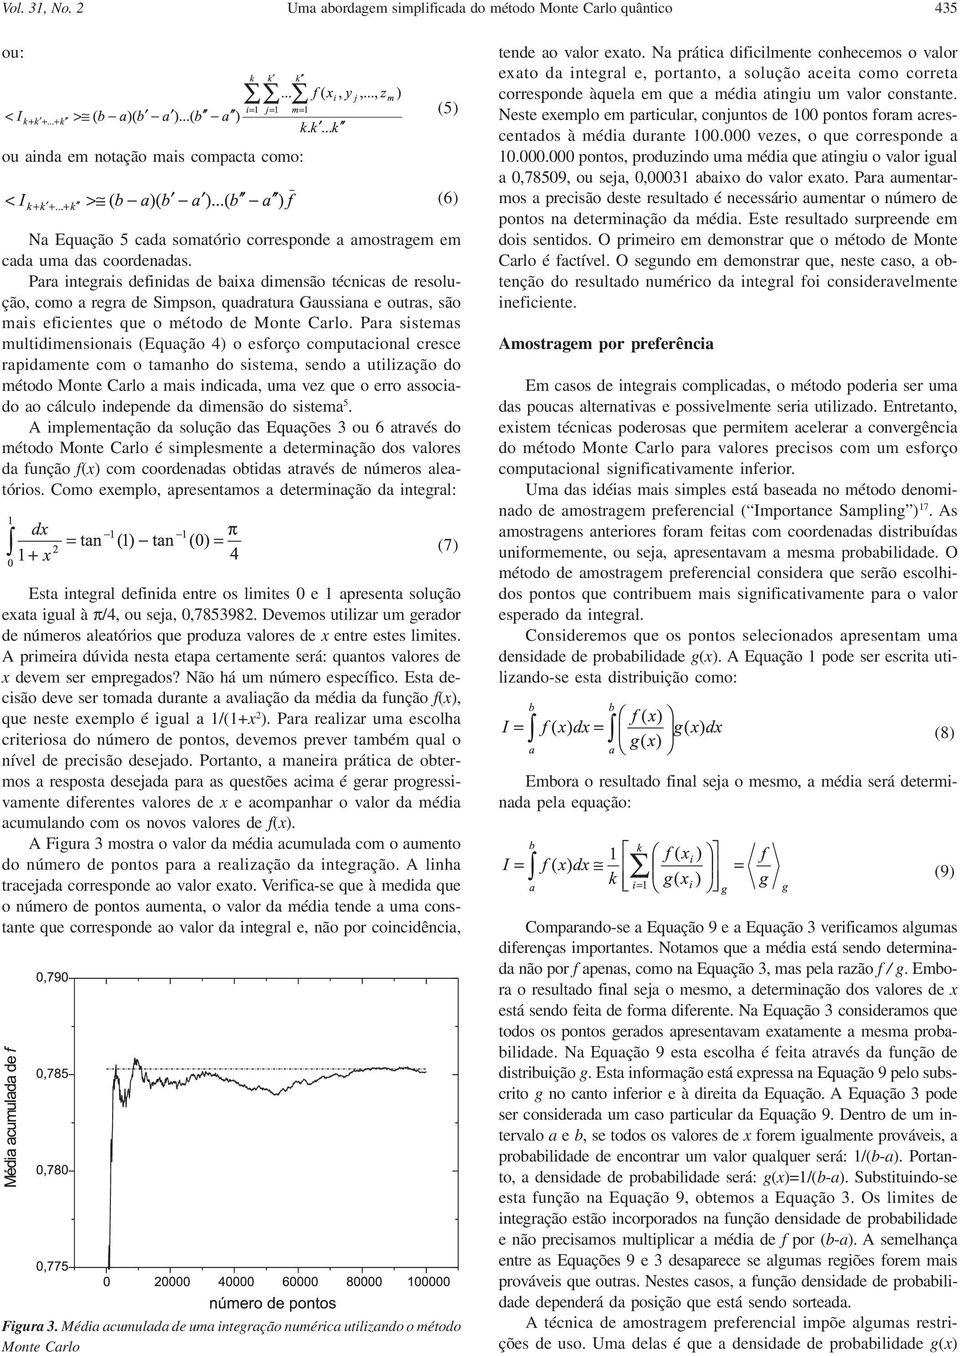 Para integrais definidas de baixa dimensão técnicas de resolução, como a regra de Simpson, quadratura Gaussiana e outras, são mais eficientes que o método de Monte Carlo.